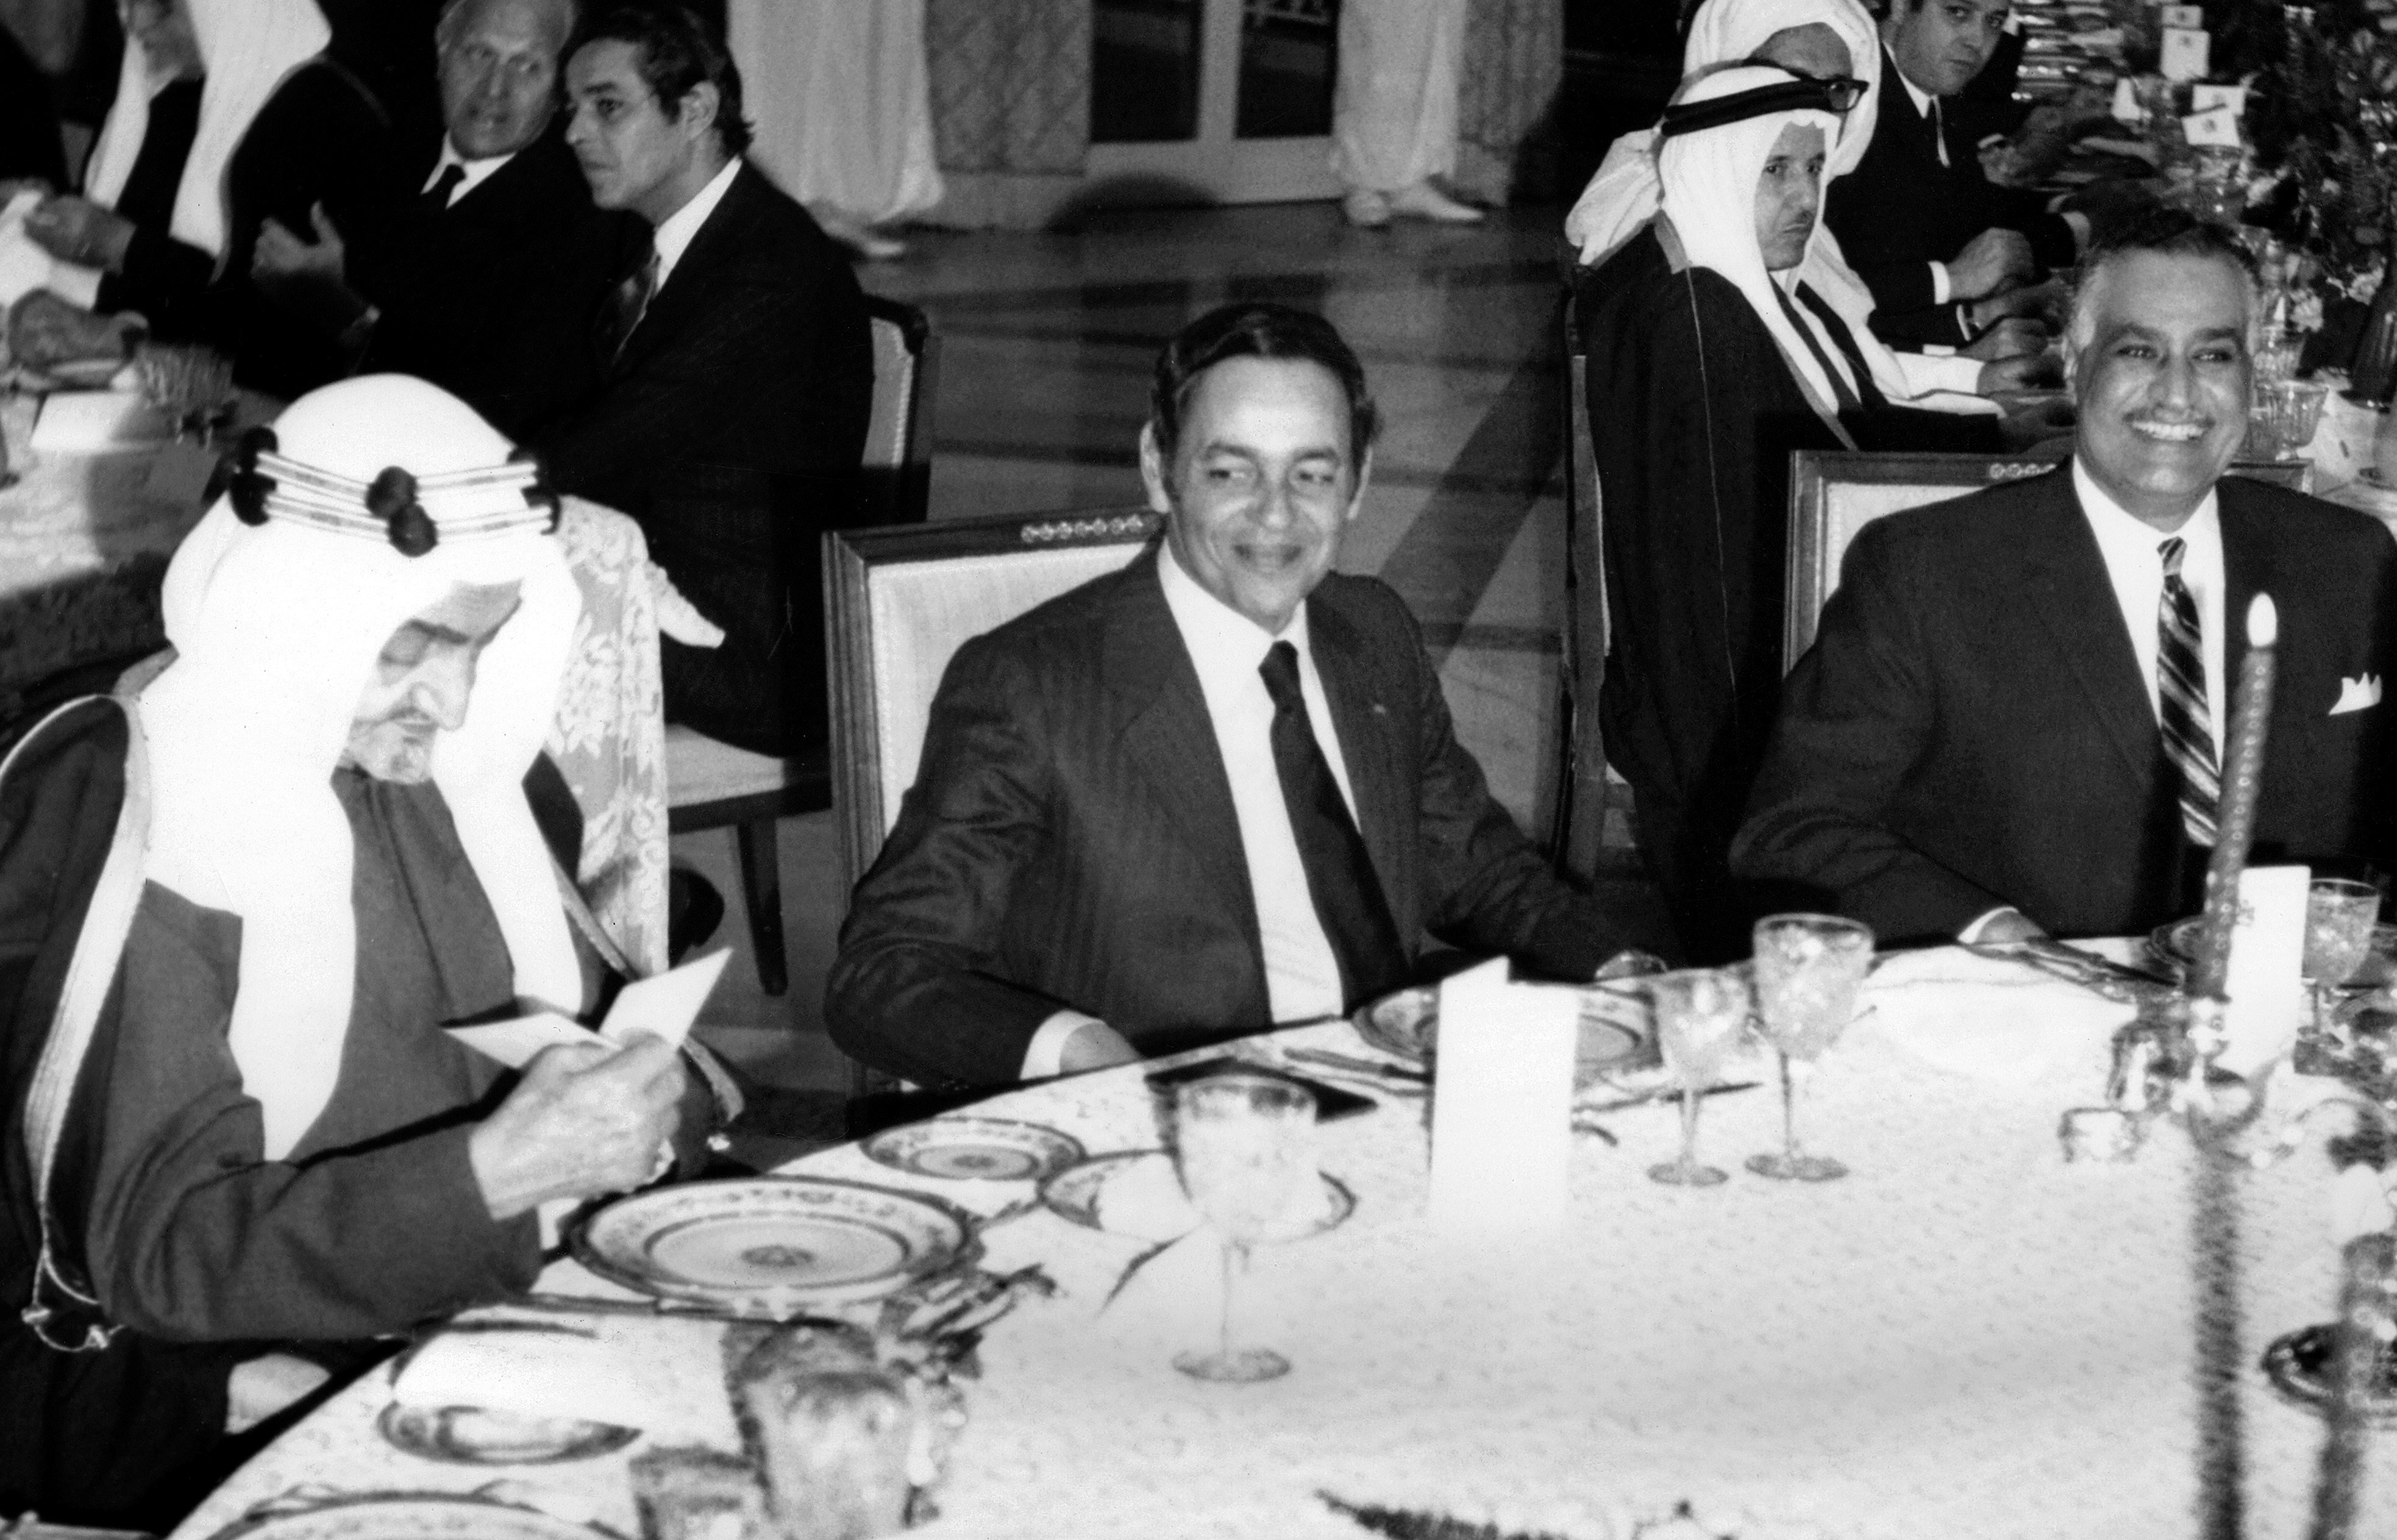 Le roi Fayçal d’Arabie saoudite, Gamal Abdel Nasser et le roi Hassan II du Maroc participent au premier sommet de la Ligue arabe organisé à Rabat, en décembre 1969 (AFP)